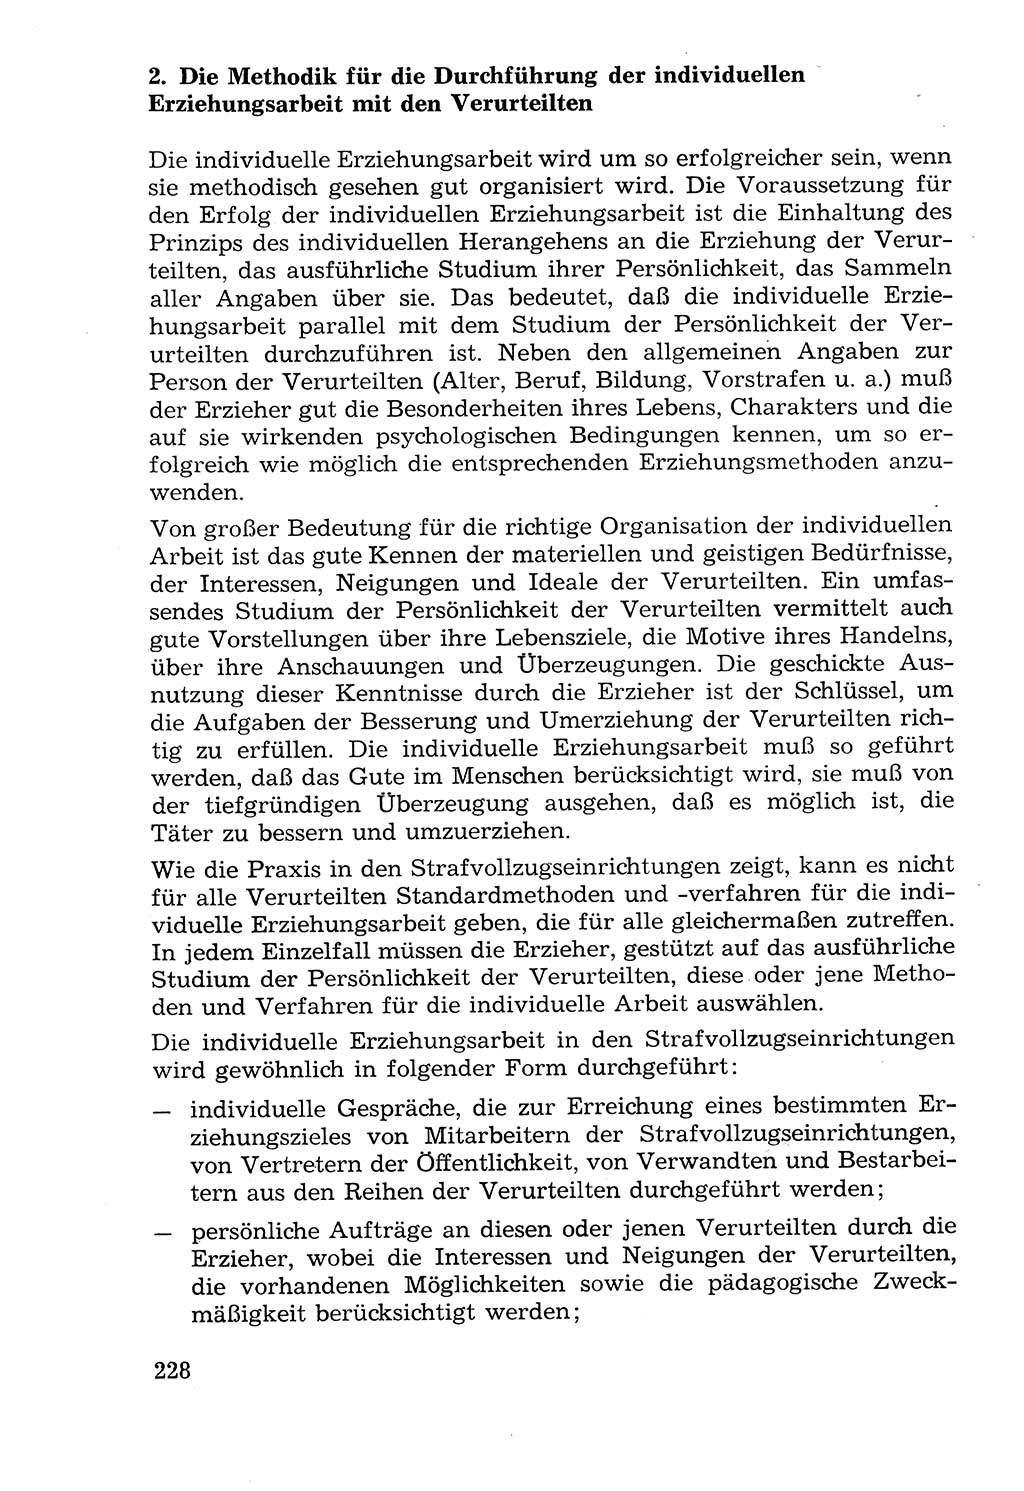 Lehrbuch der Strafvollzugspädagogik [Deutsche Demokratische Republik (DDR)] 1969, Seite 228 (Lb. SV-Pd. DDR 1969, S. 228)